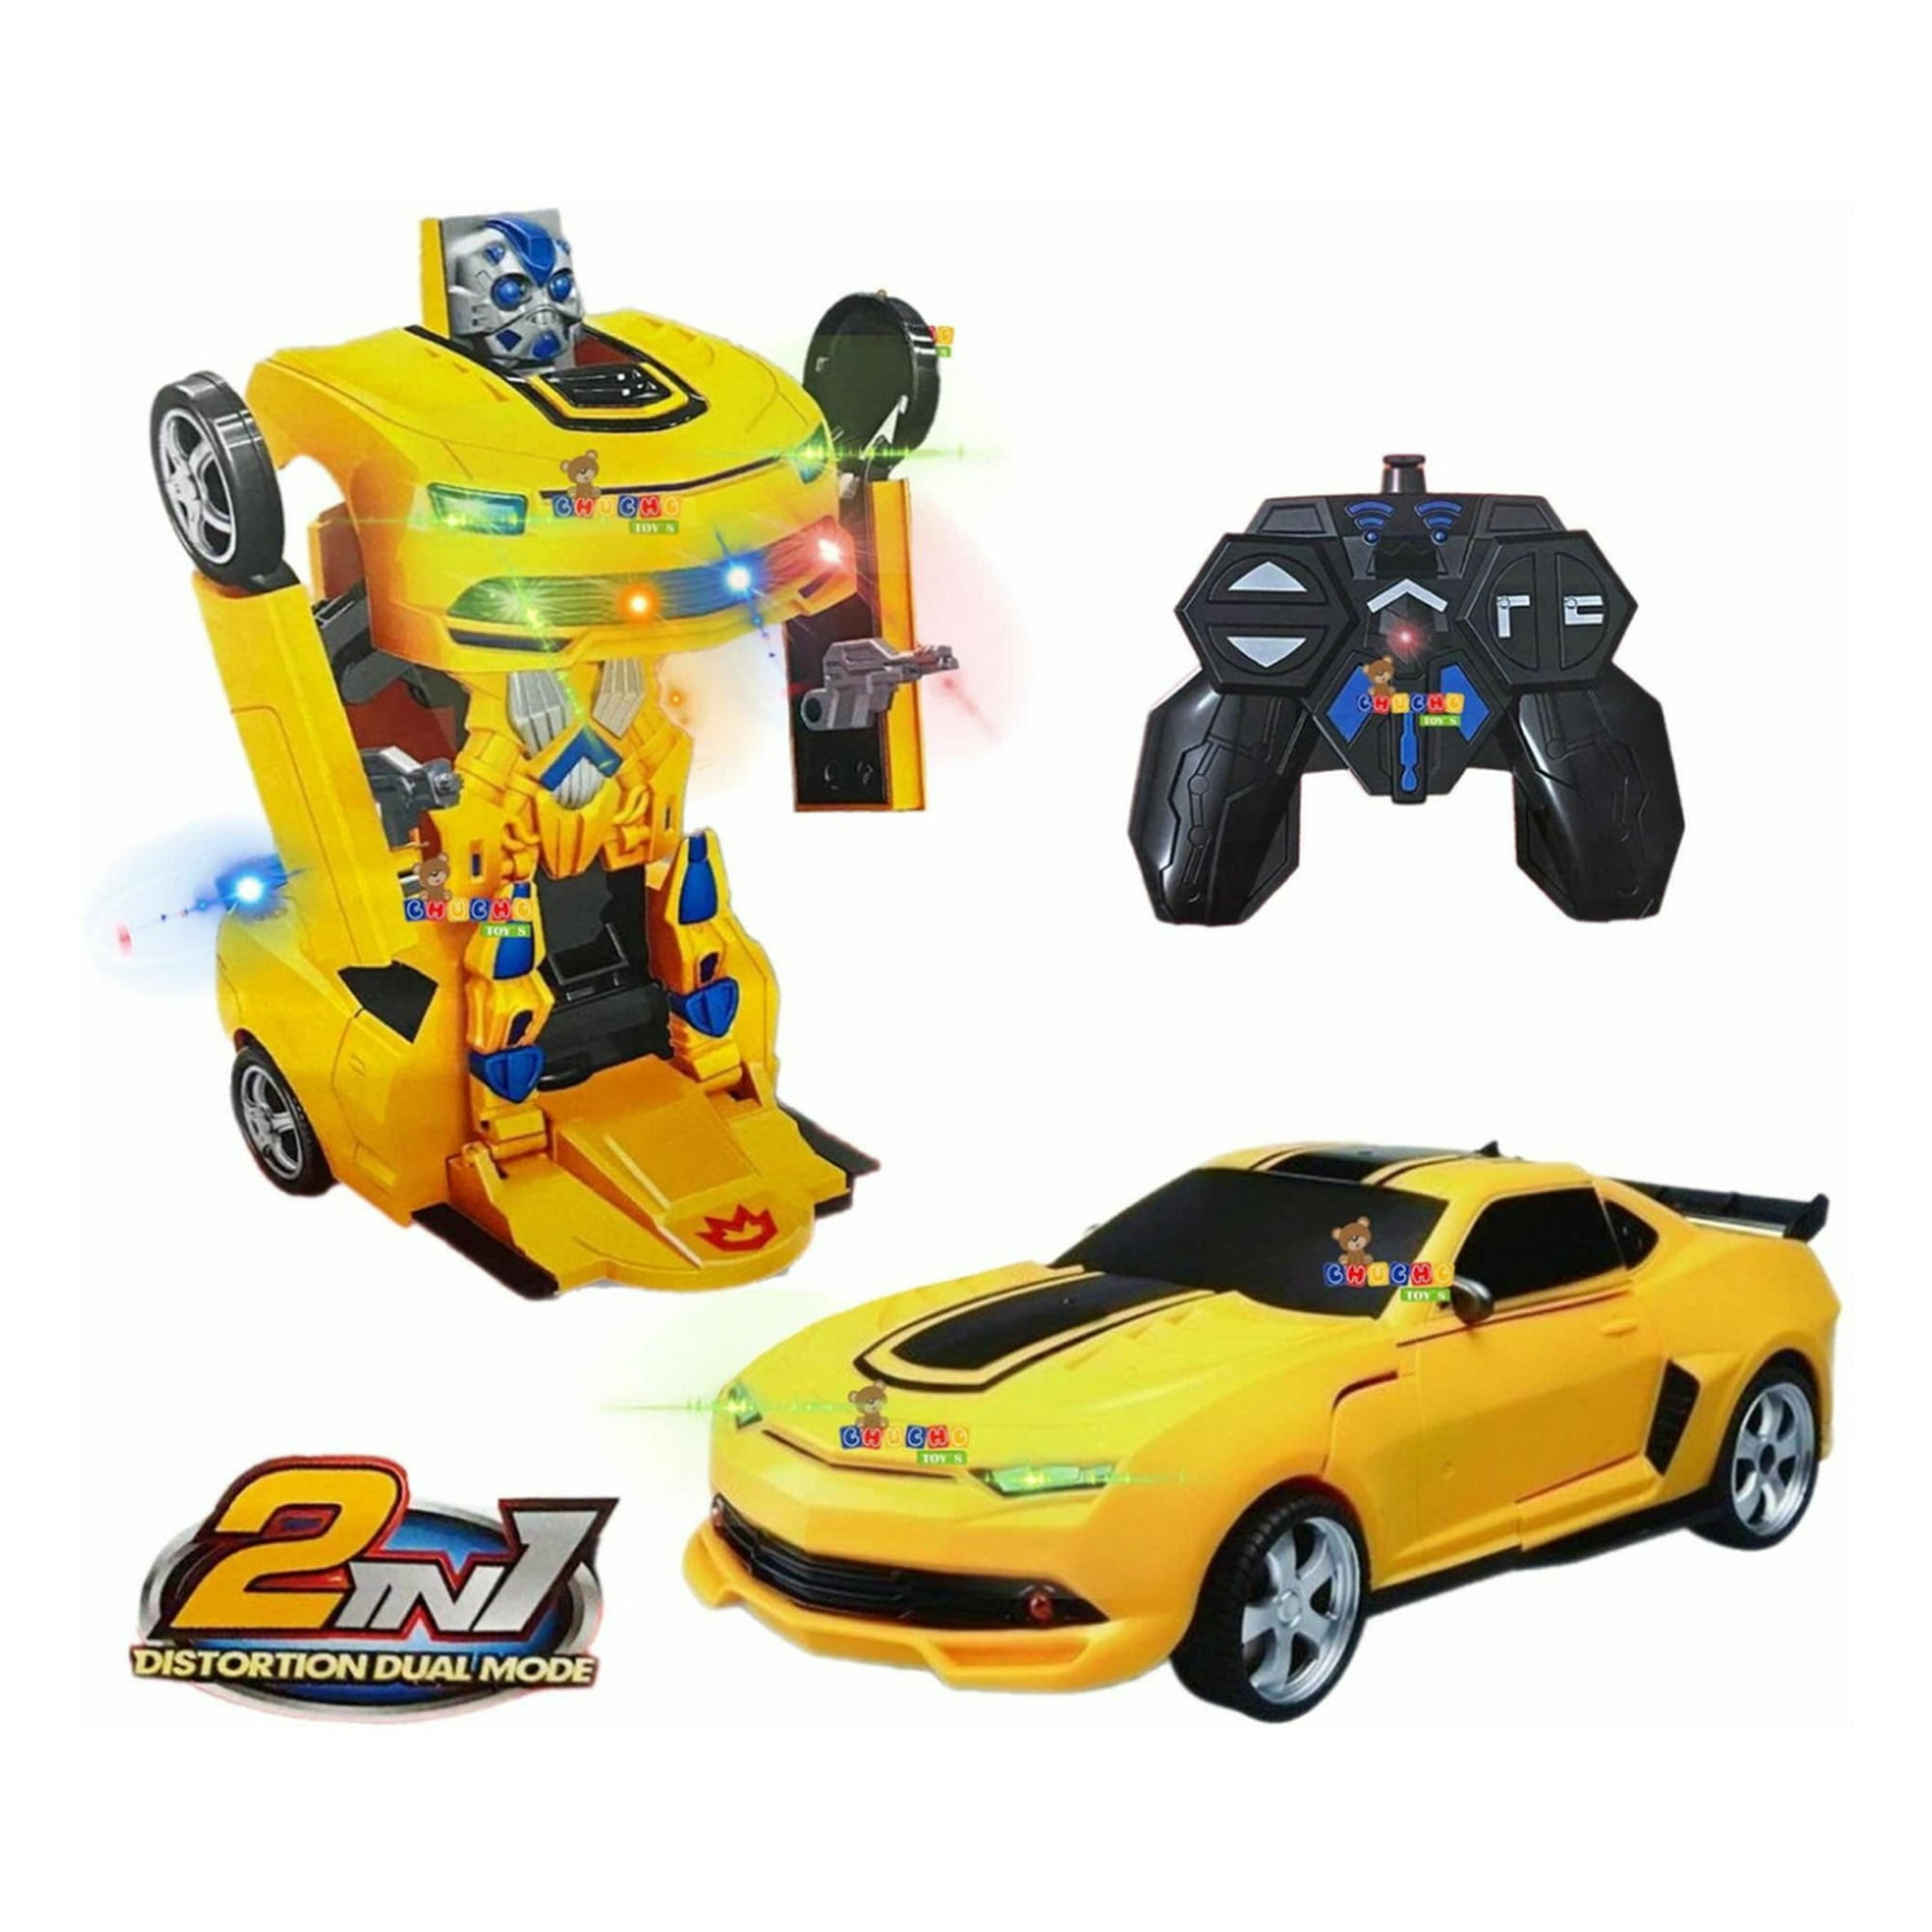 Camaro robot transformer control remoto con luz juguete 3en1 chucho toys carro robot transformer